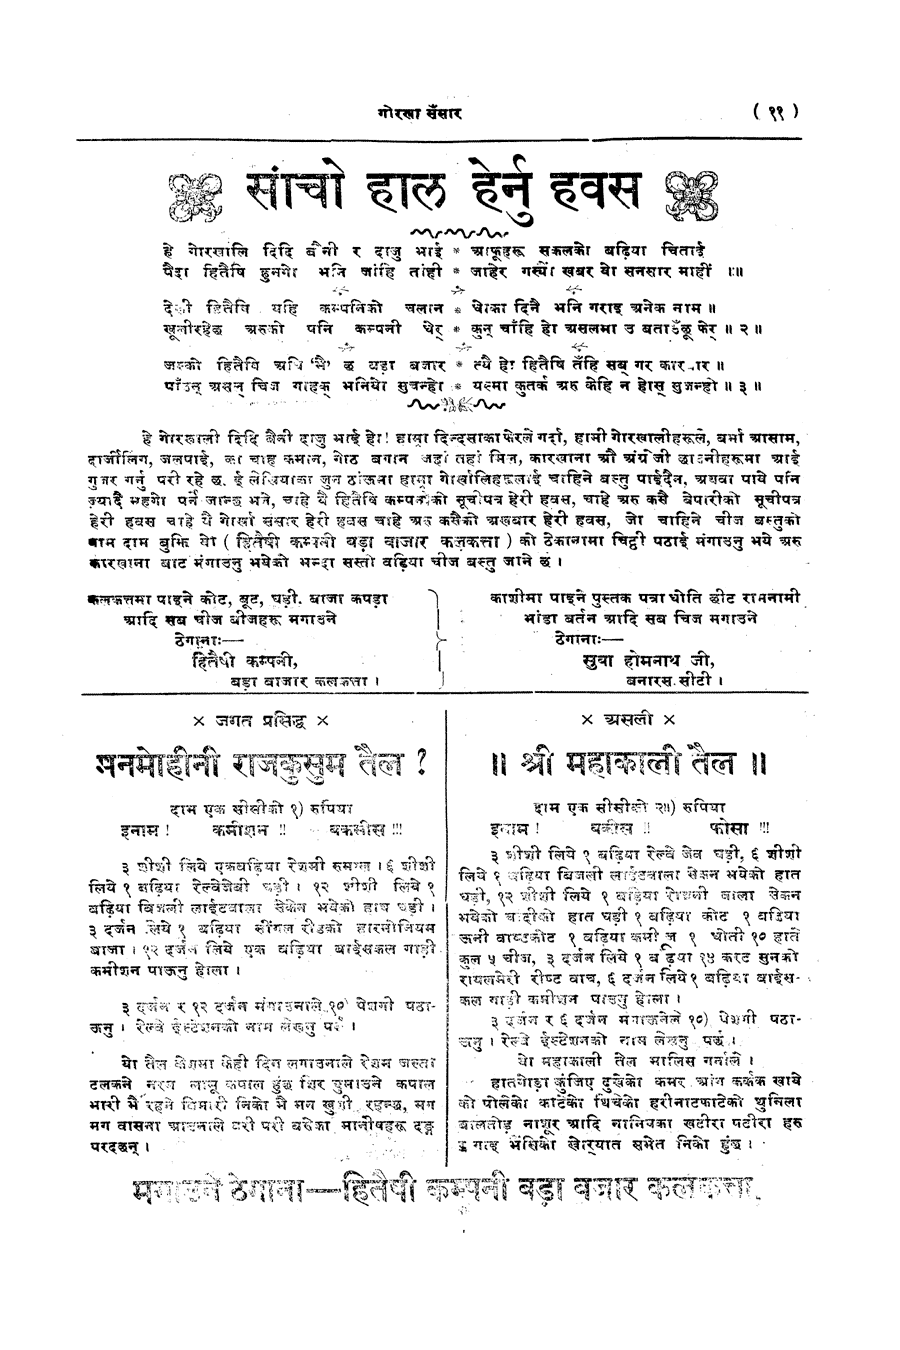 Gorkha Sansar, 14 Feb 1928, page 11